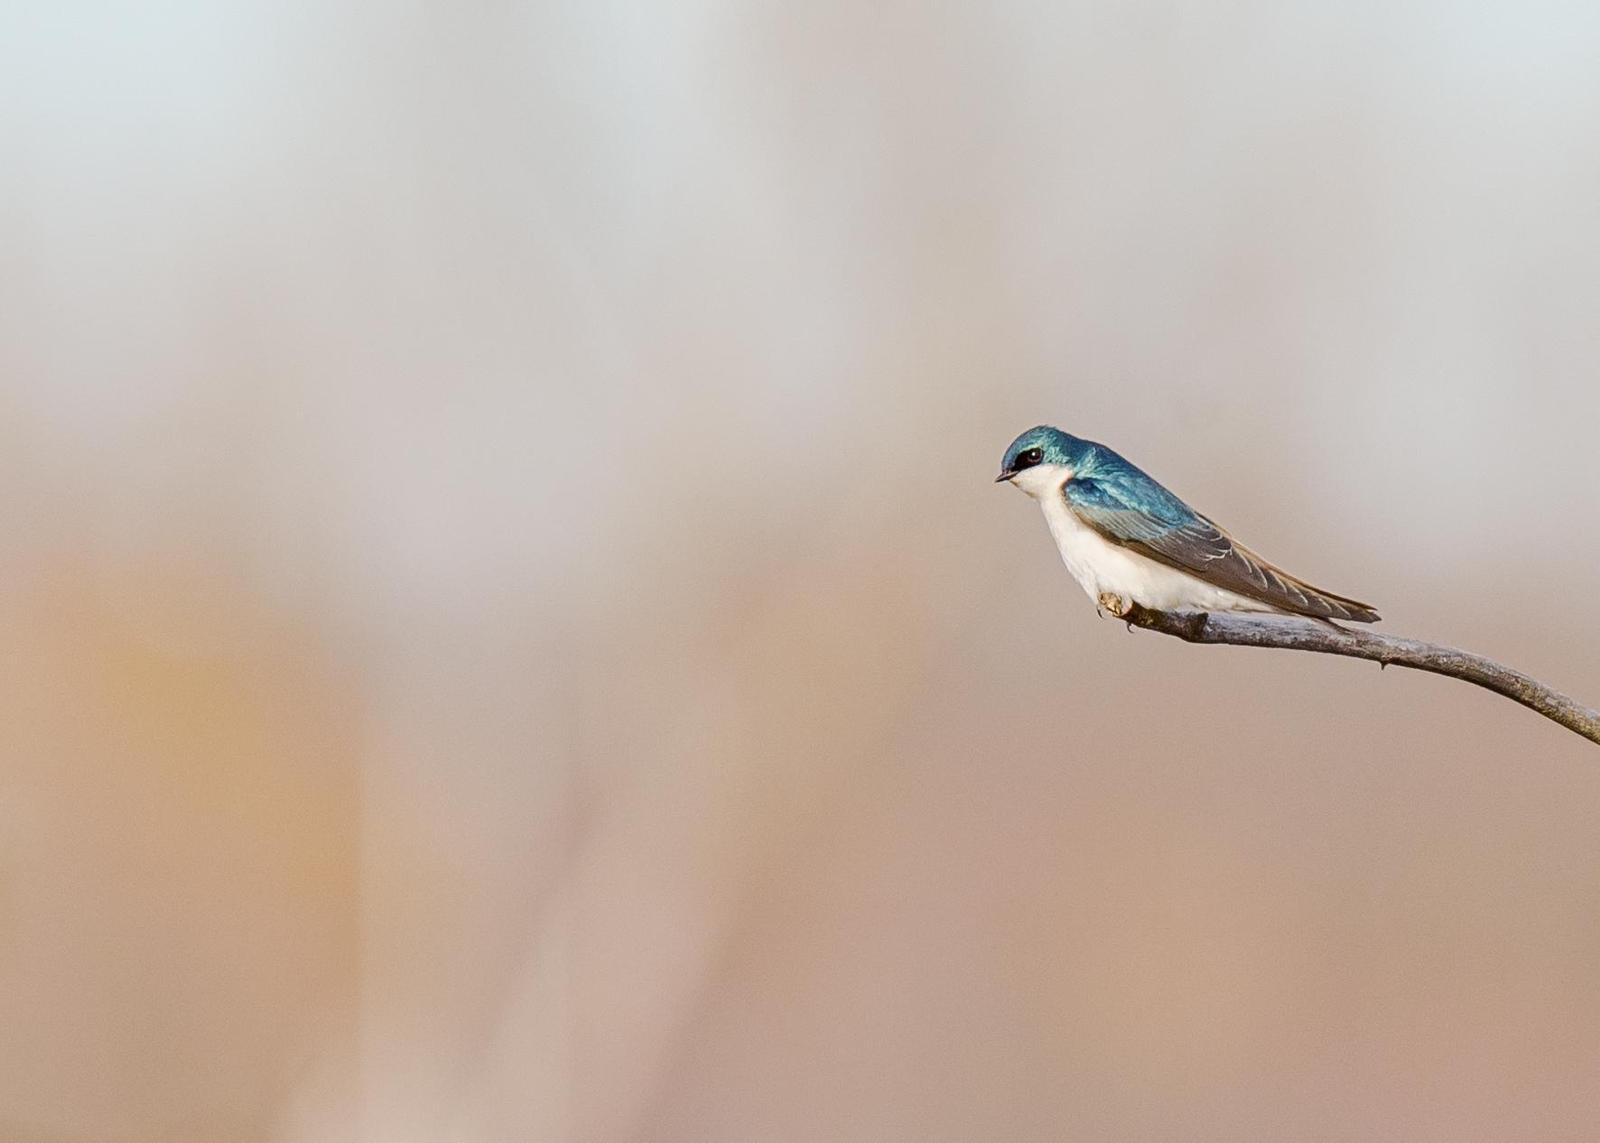 Tree Swallow Photo by Keshava Mysore